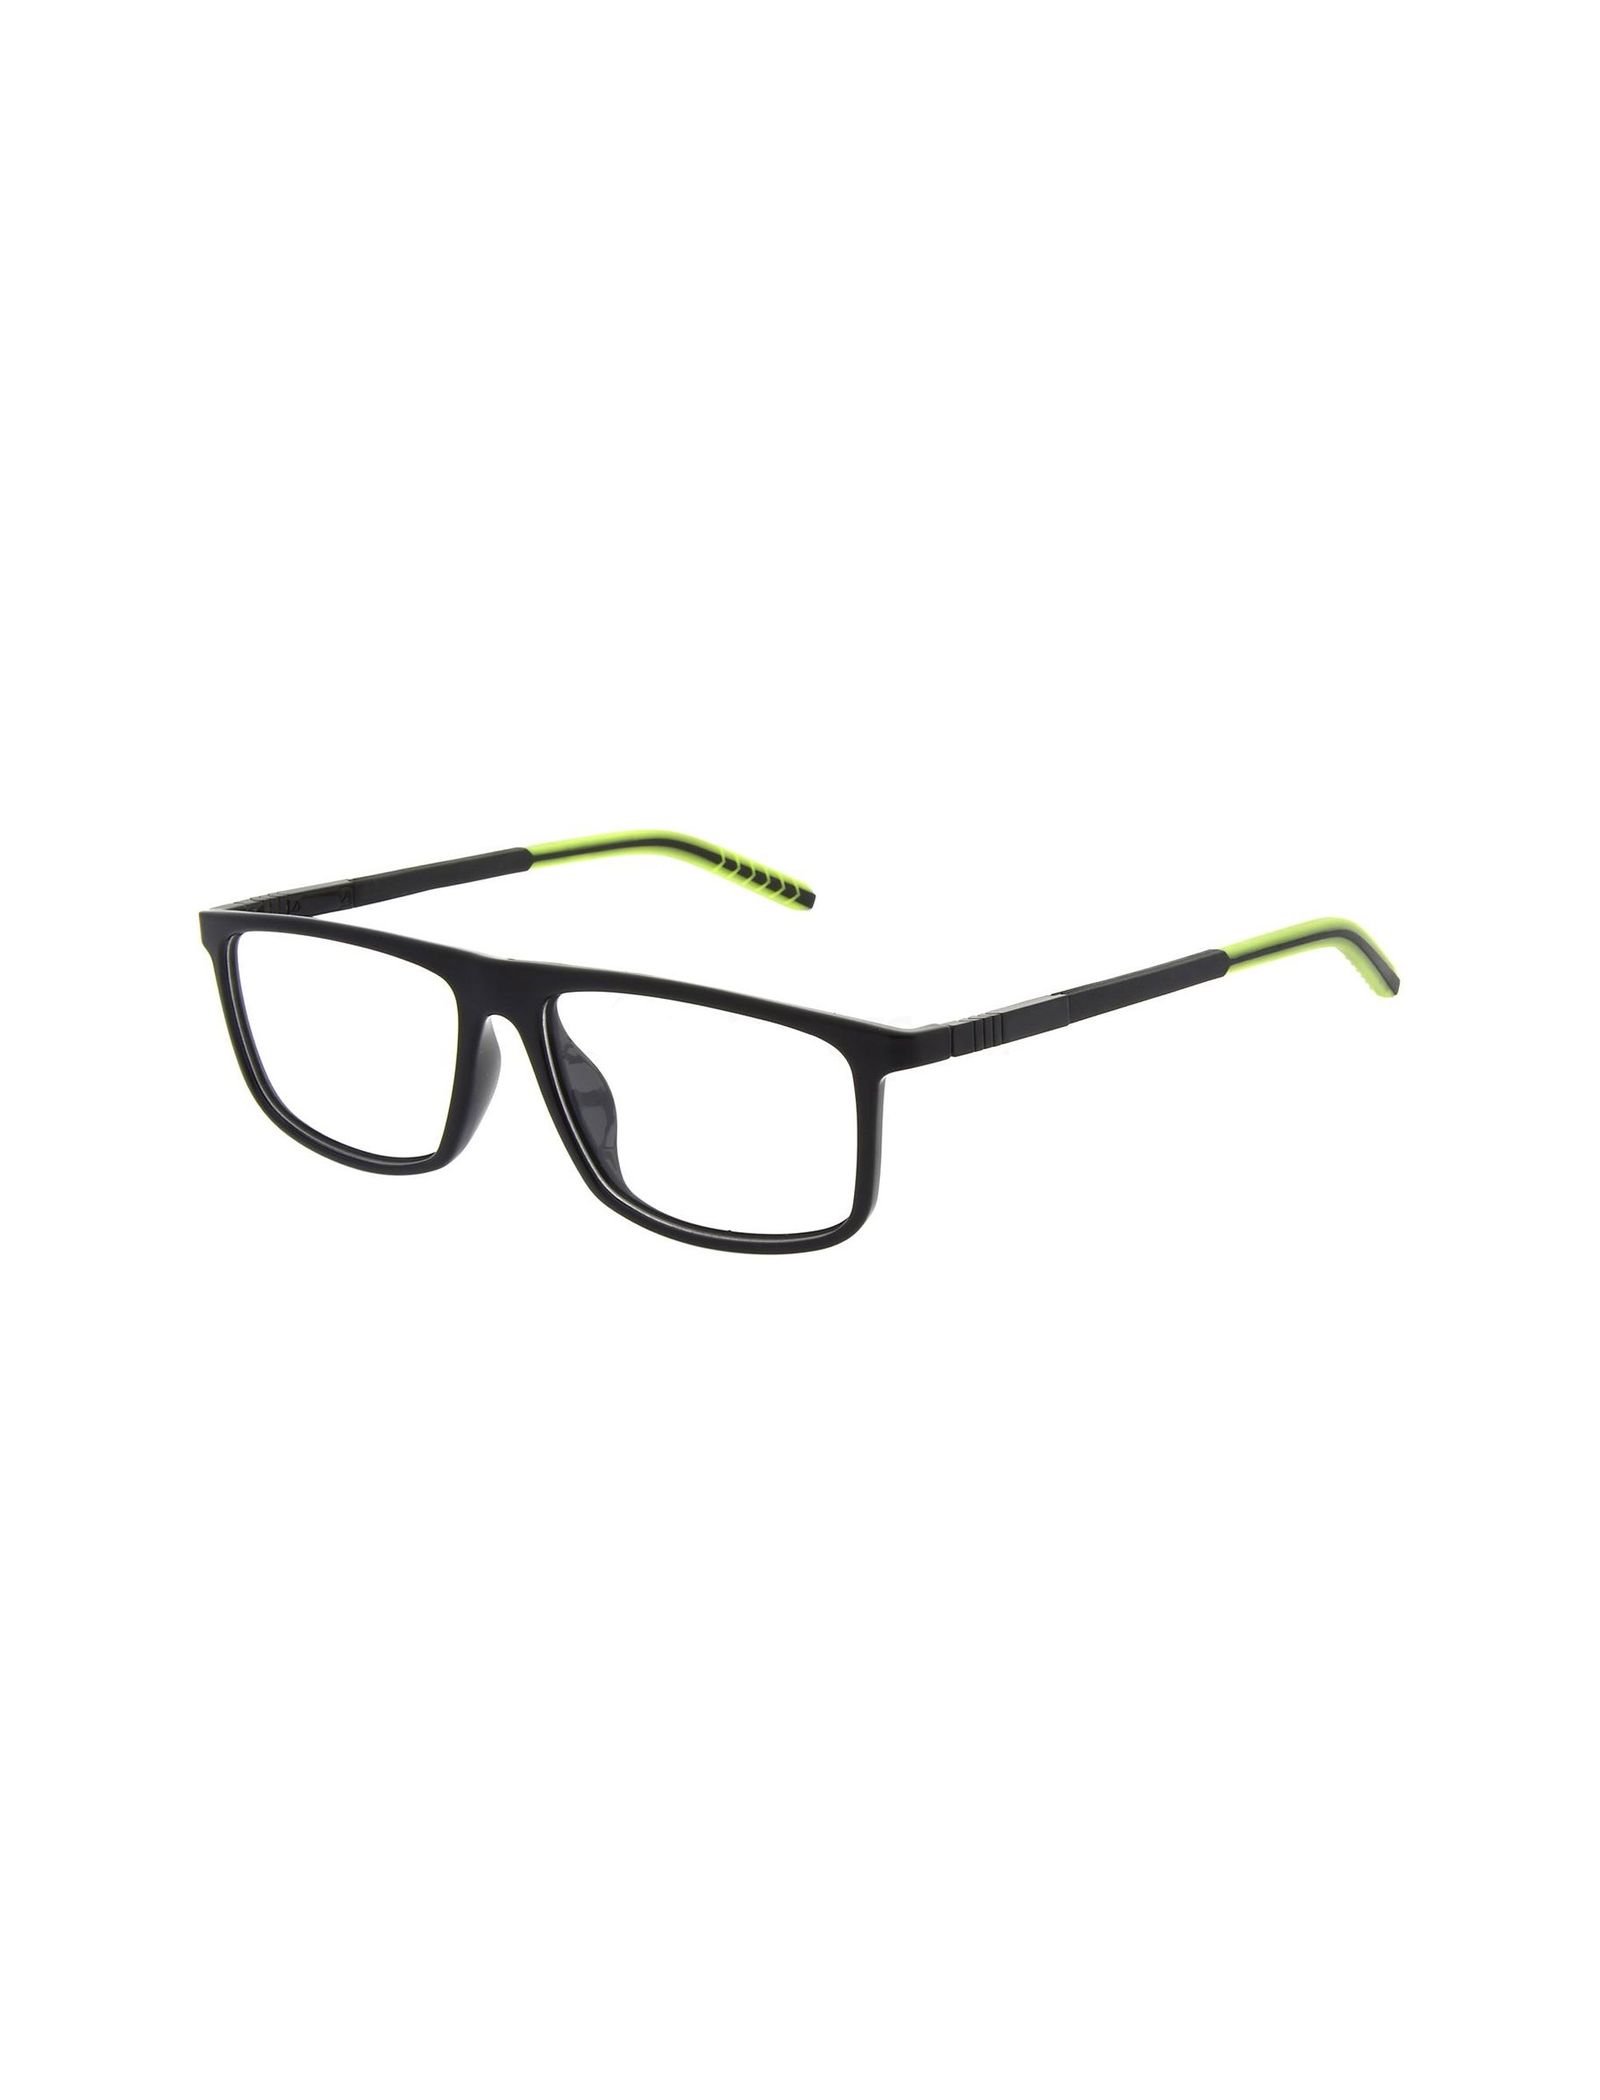 عینک طبی ویفرر مردانه - اسپاین - مشکي و سبز - 1